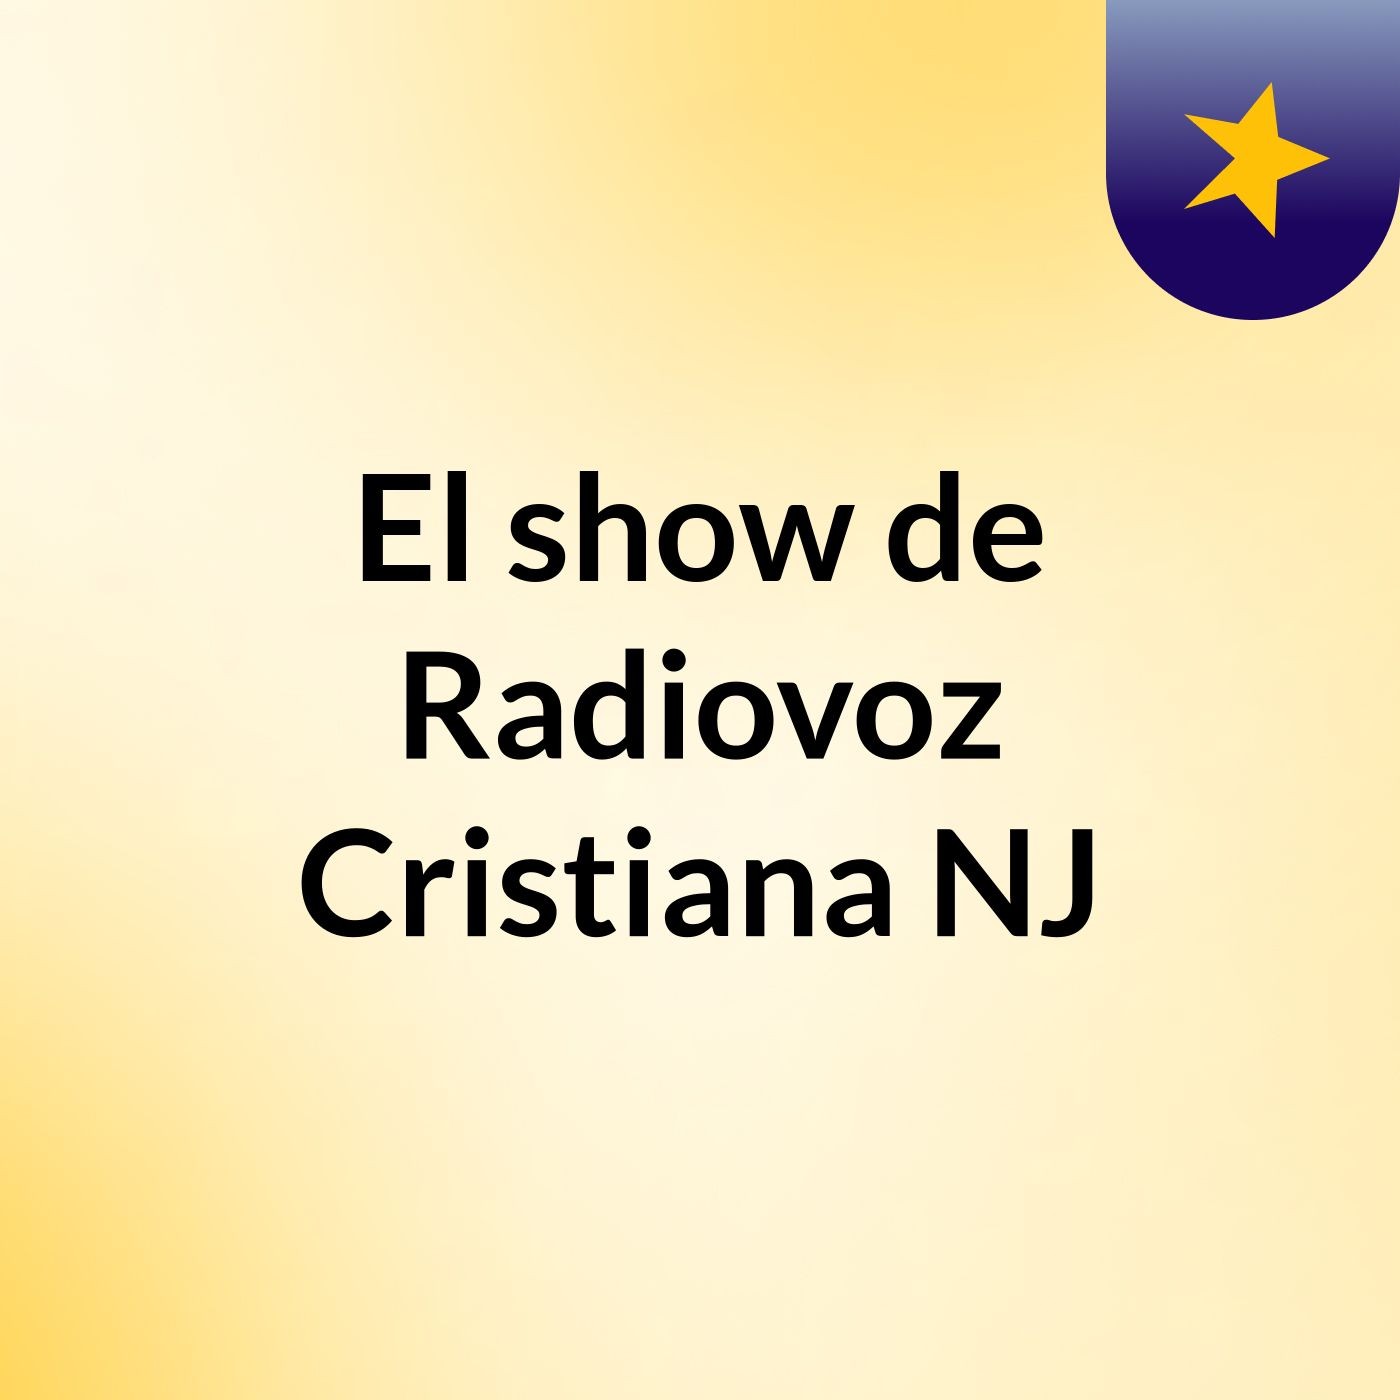 El show de Radiovoz Cristiana NJ